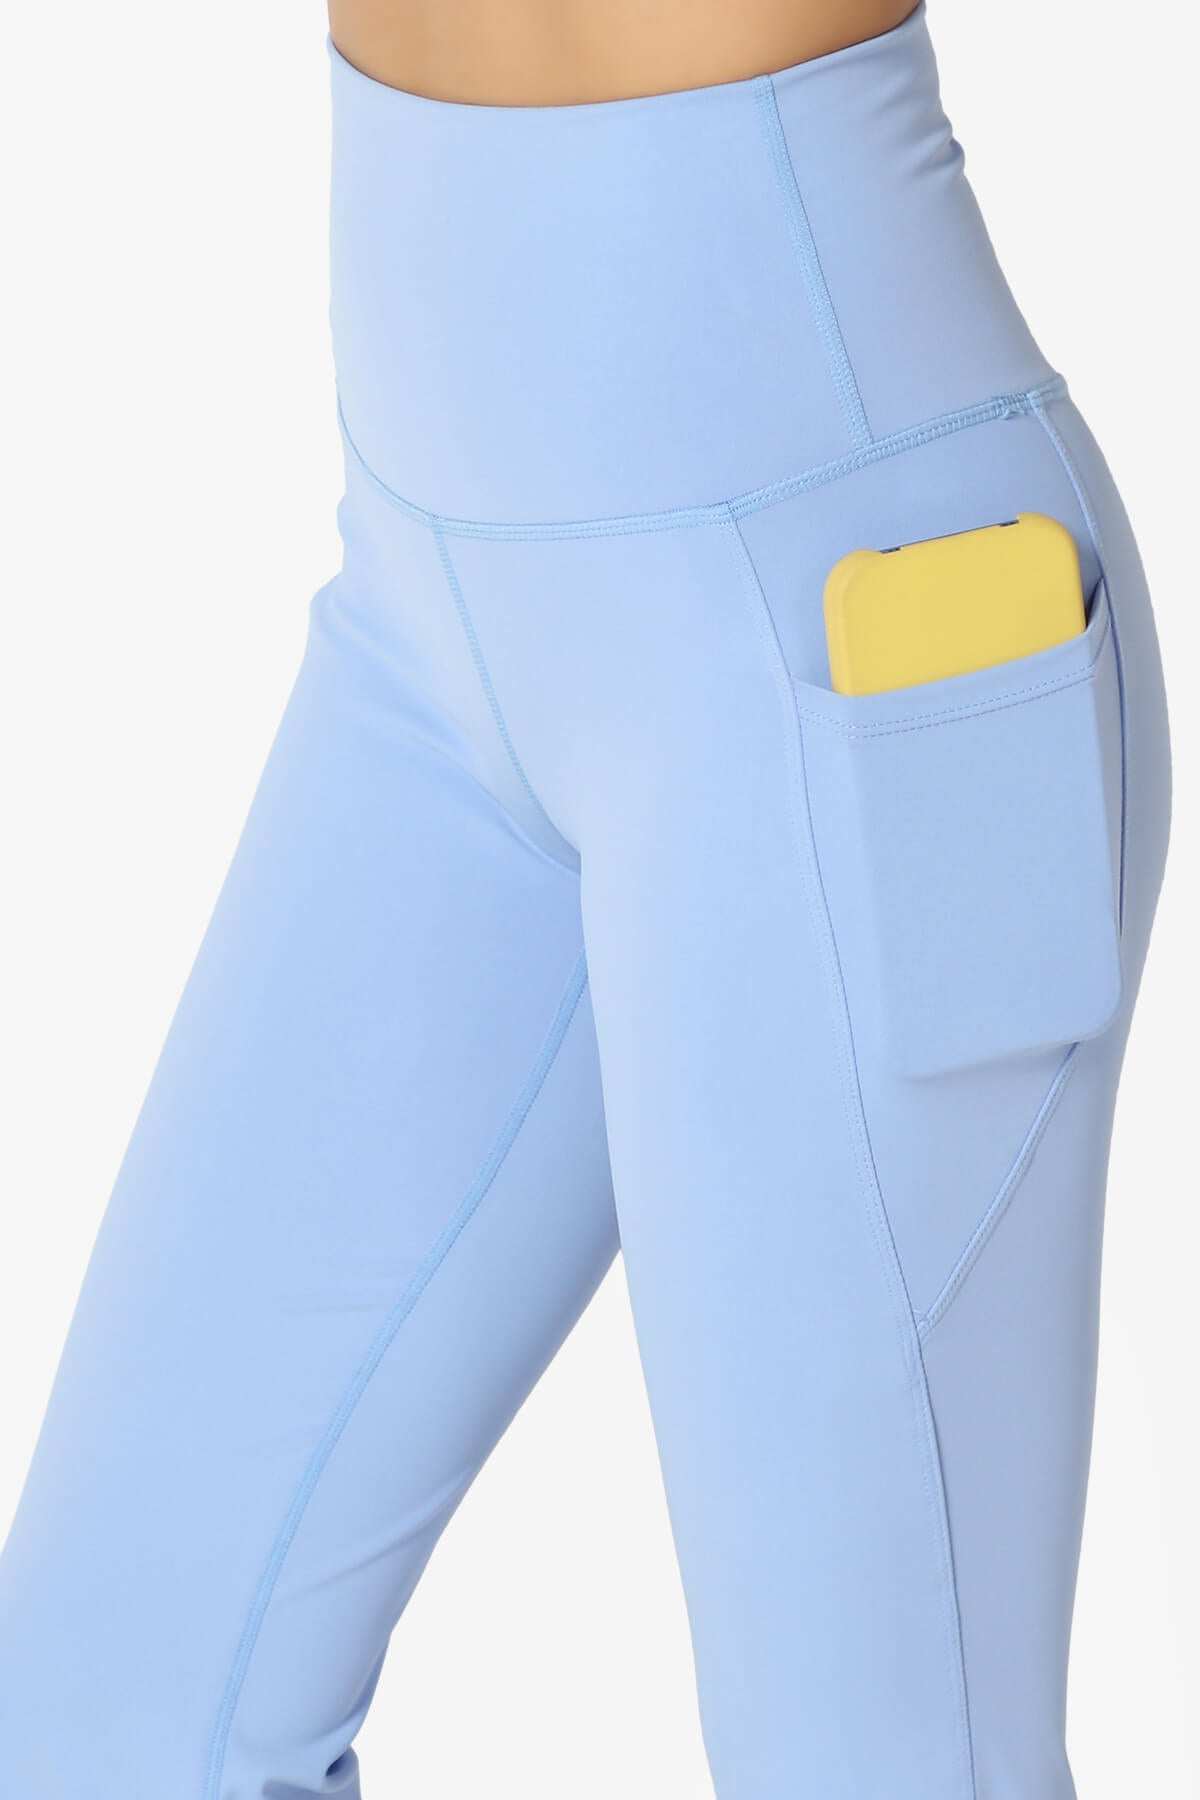 Gemma Athletic Pocket Flare Yoga Pants